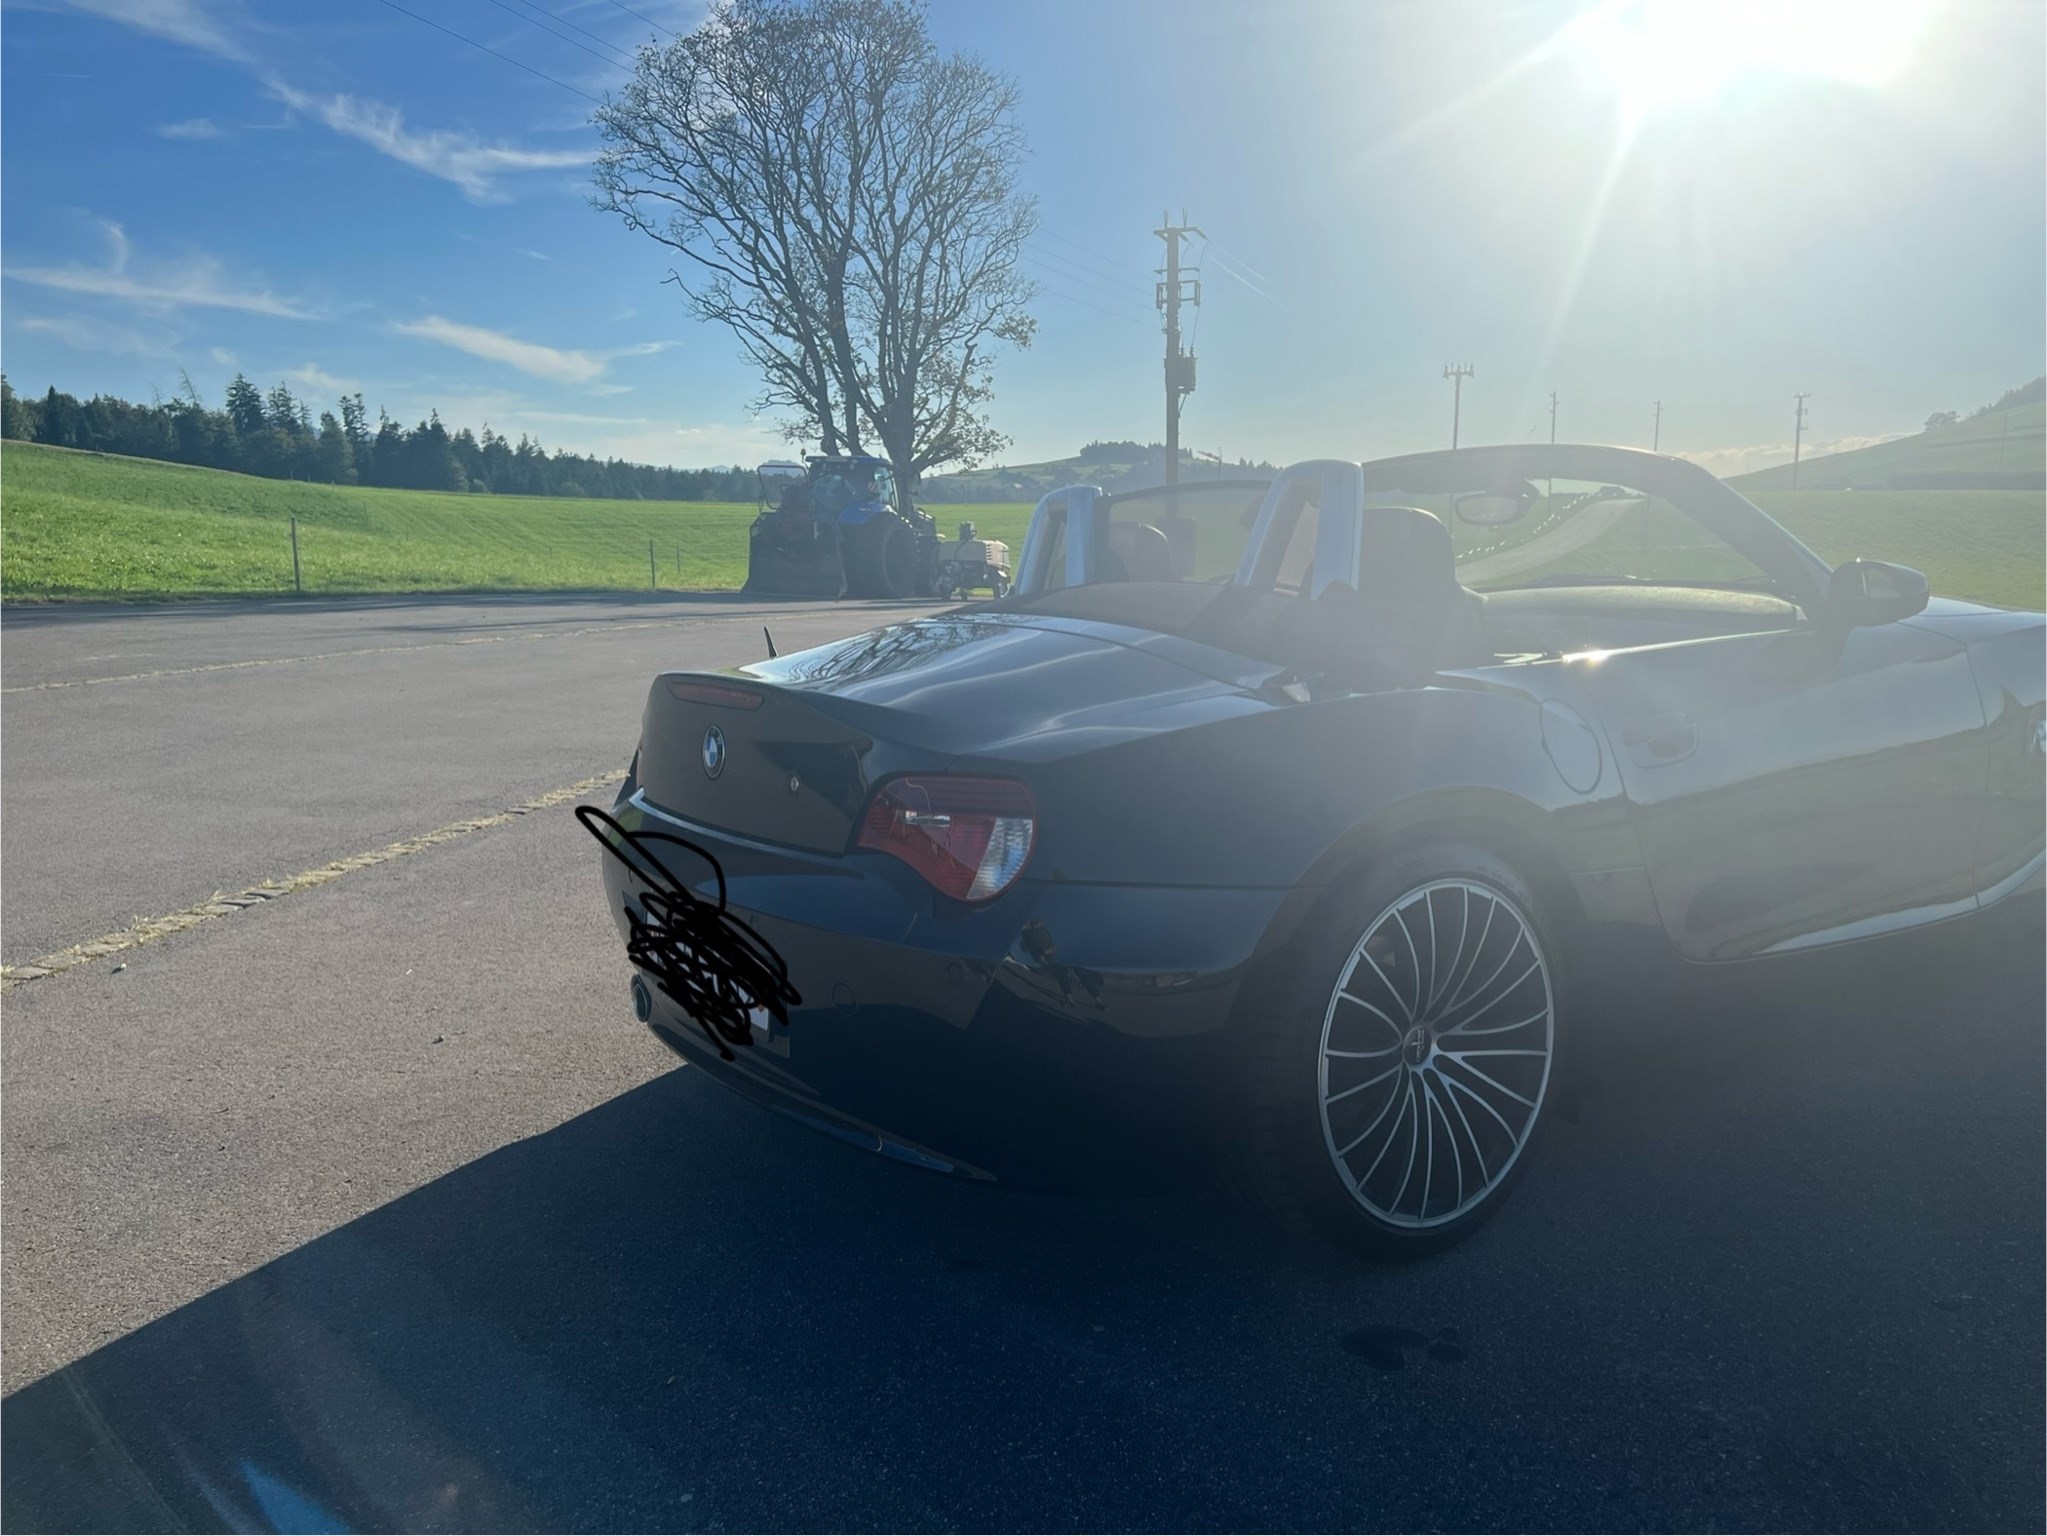 BMW Z4 3.0si Roadster